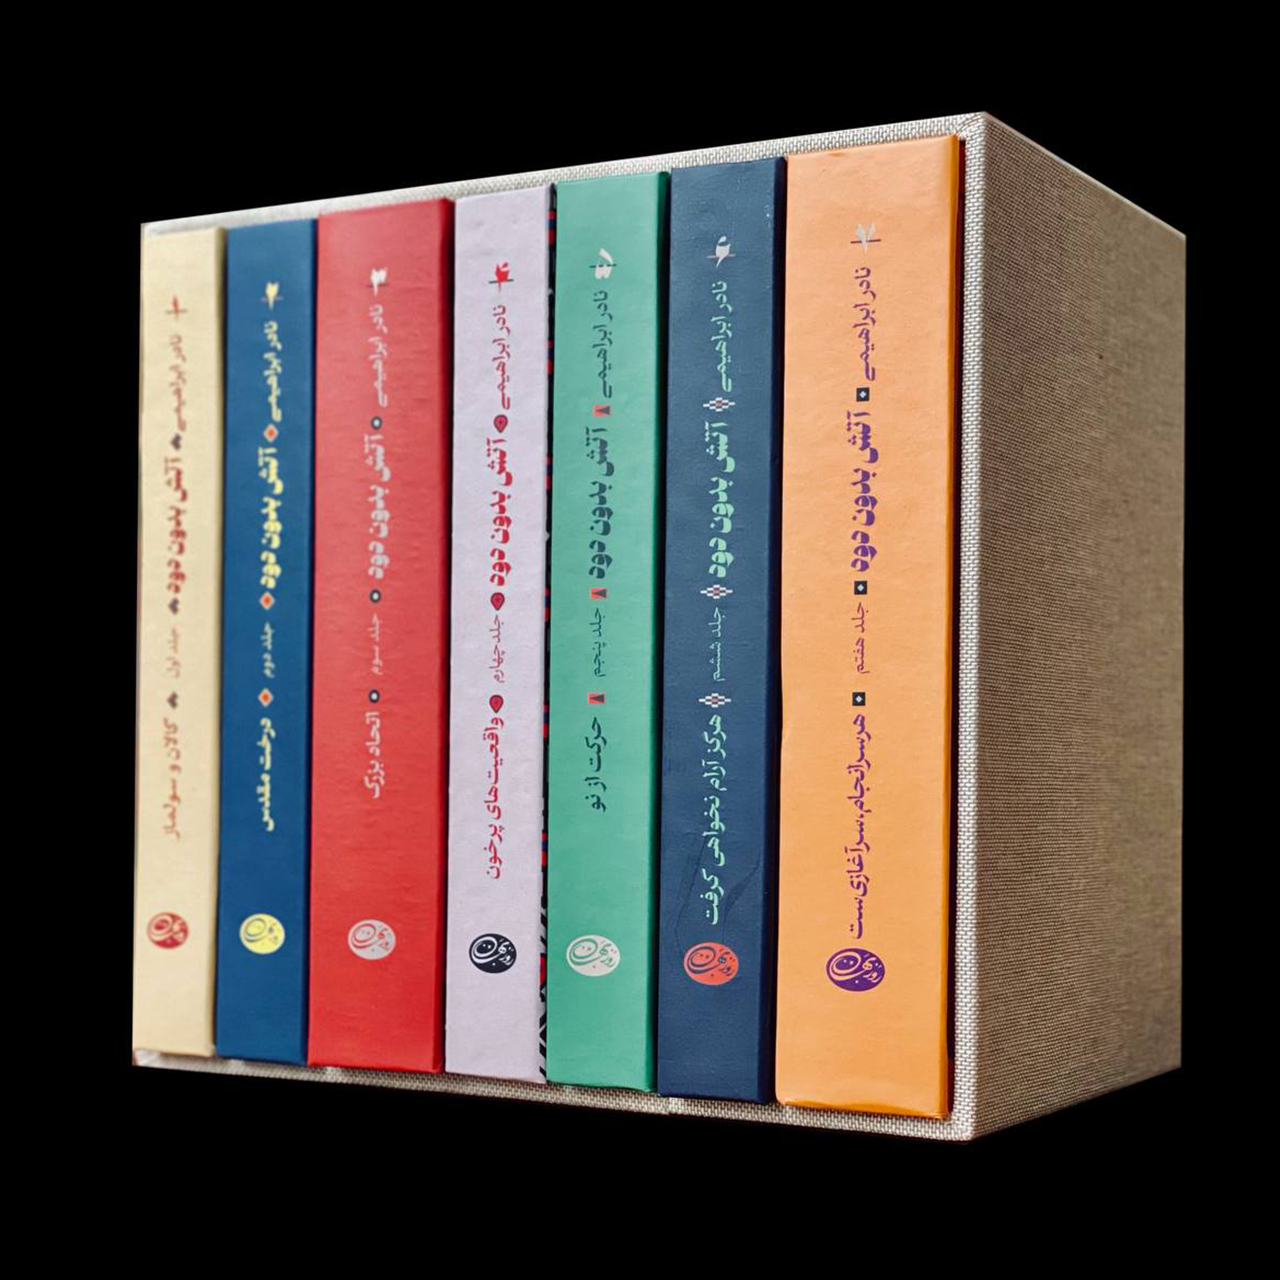 کتاب آتش بدون دود اثر نادر ابراهیمی نشر روزبهان 7 جلدی